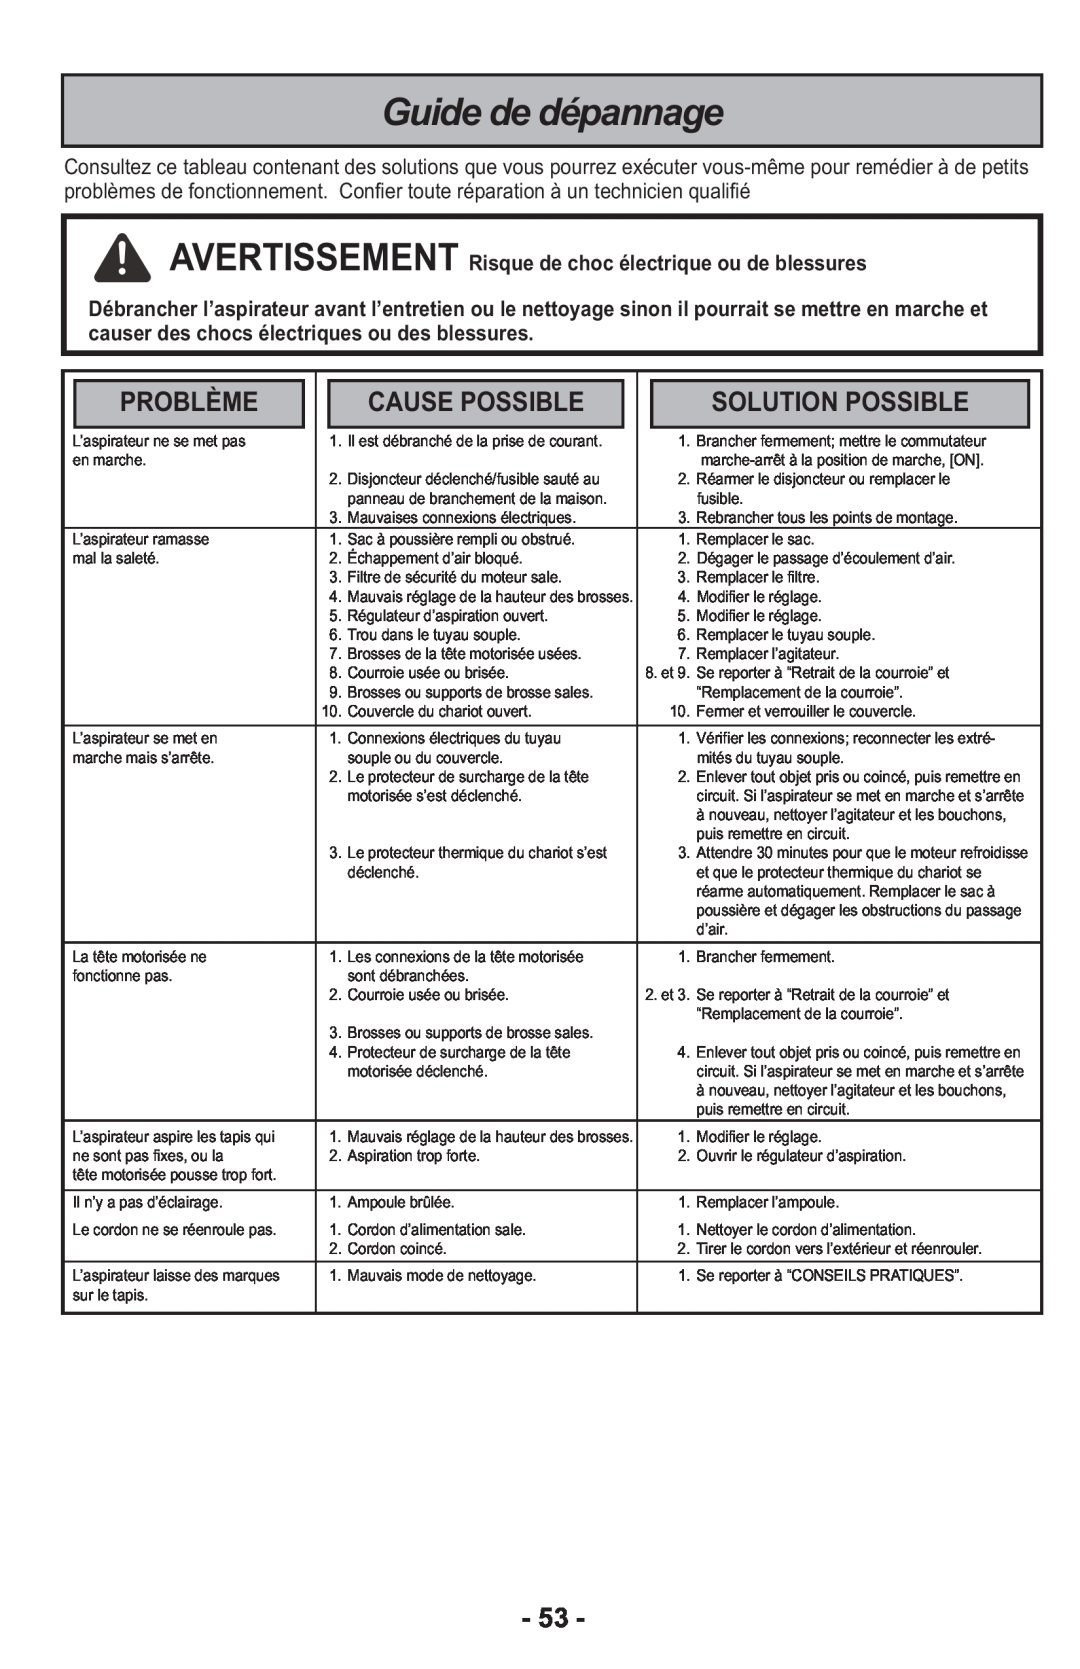 Panasonic MCCG917 manuel dutilisation Guide de dépannage, Problème, Cause Possible, Solution Possible 